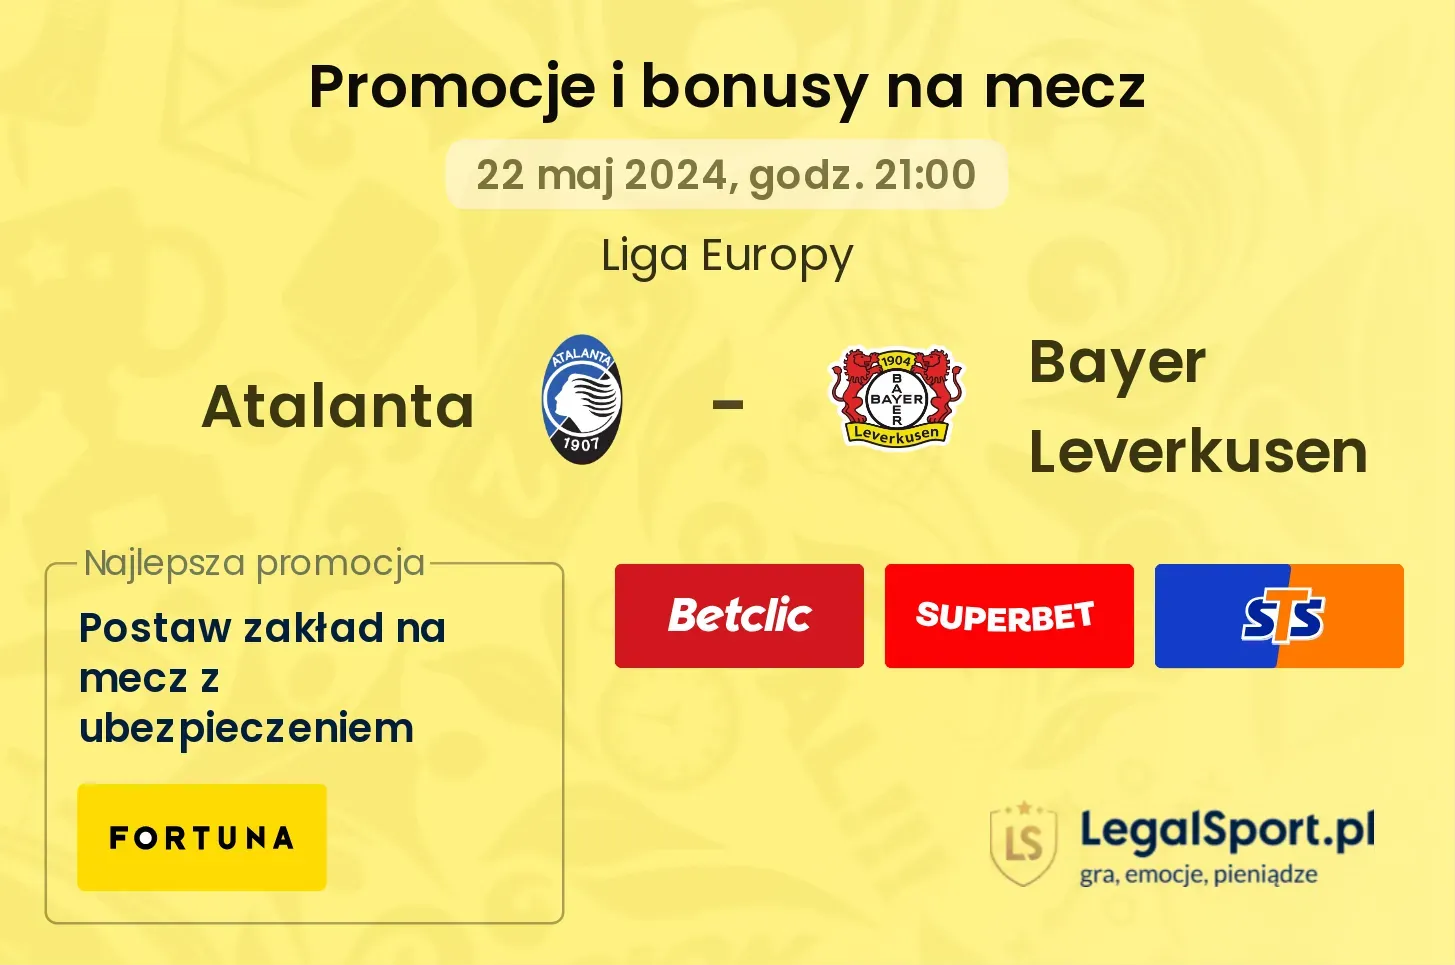 Atalanta - Bayer Leverkusen bonusy i promocje (22.05, 21:00)